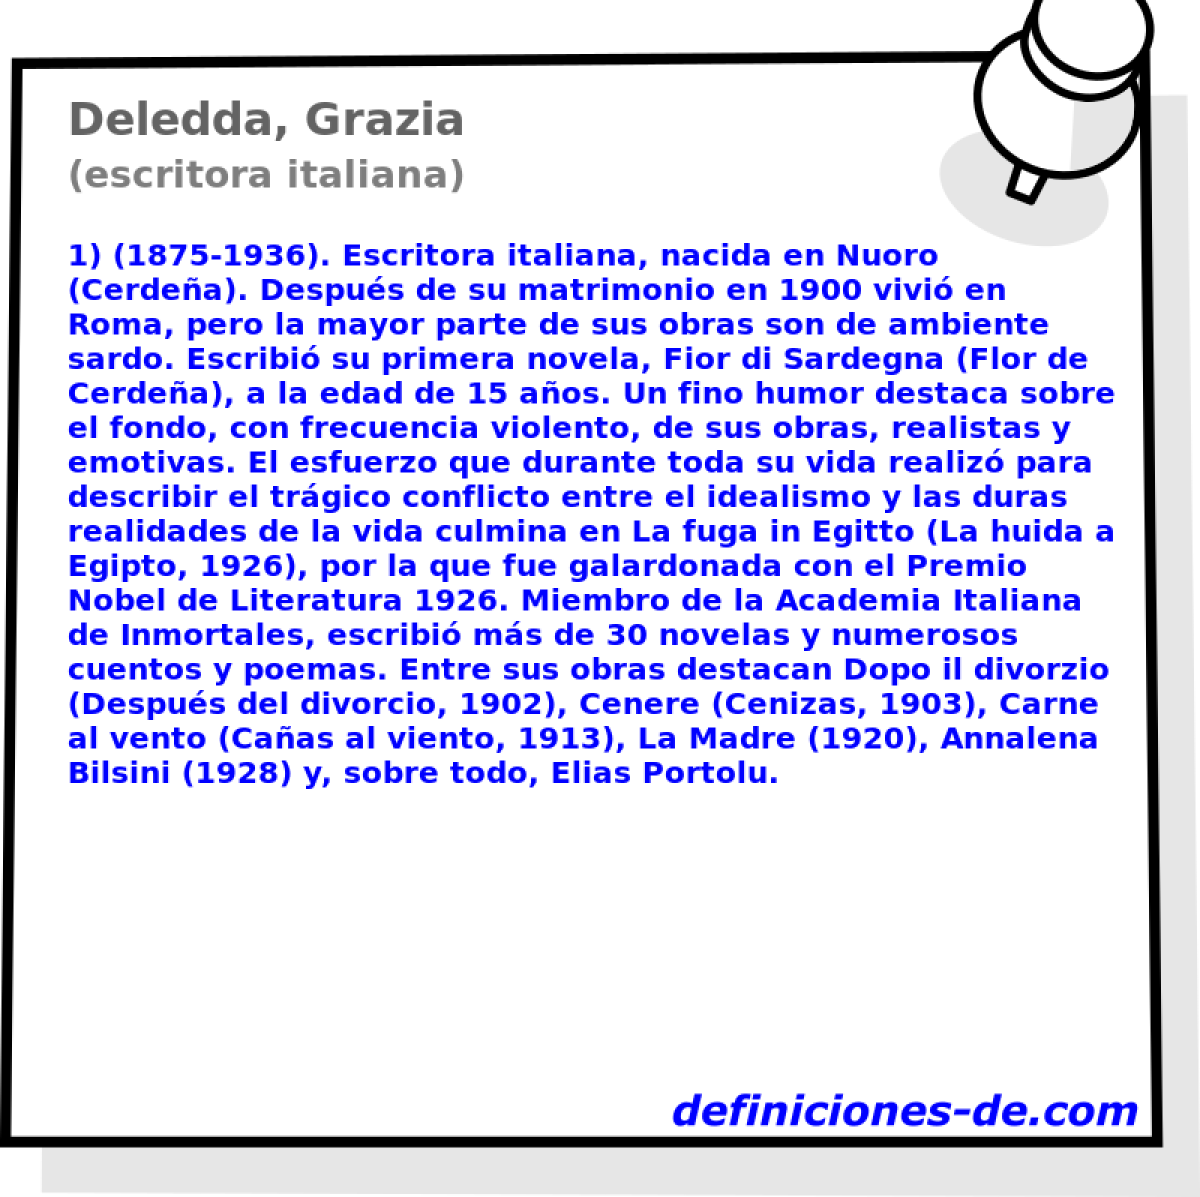 Deledda, Grazia (escritora italiana)